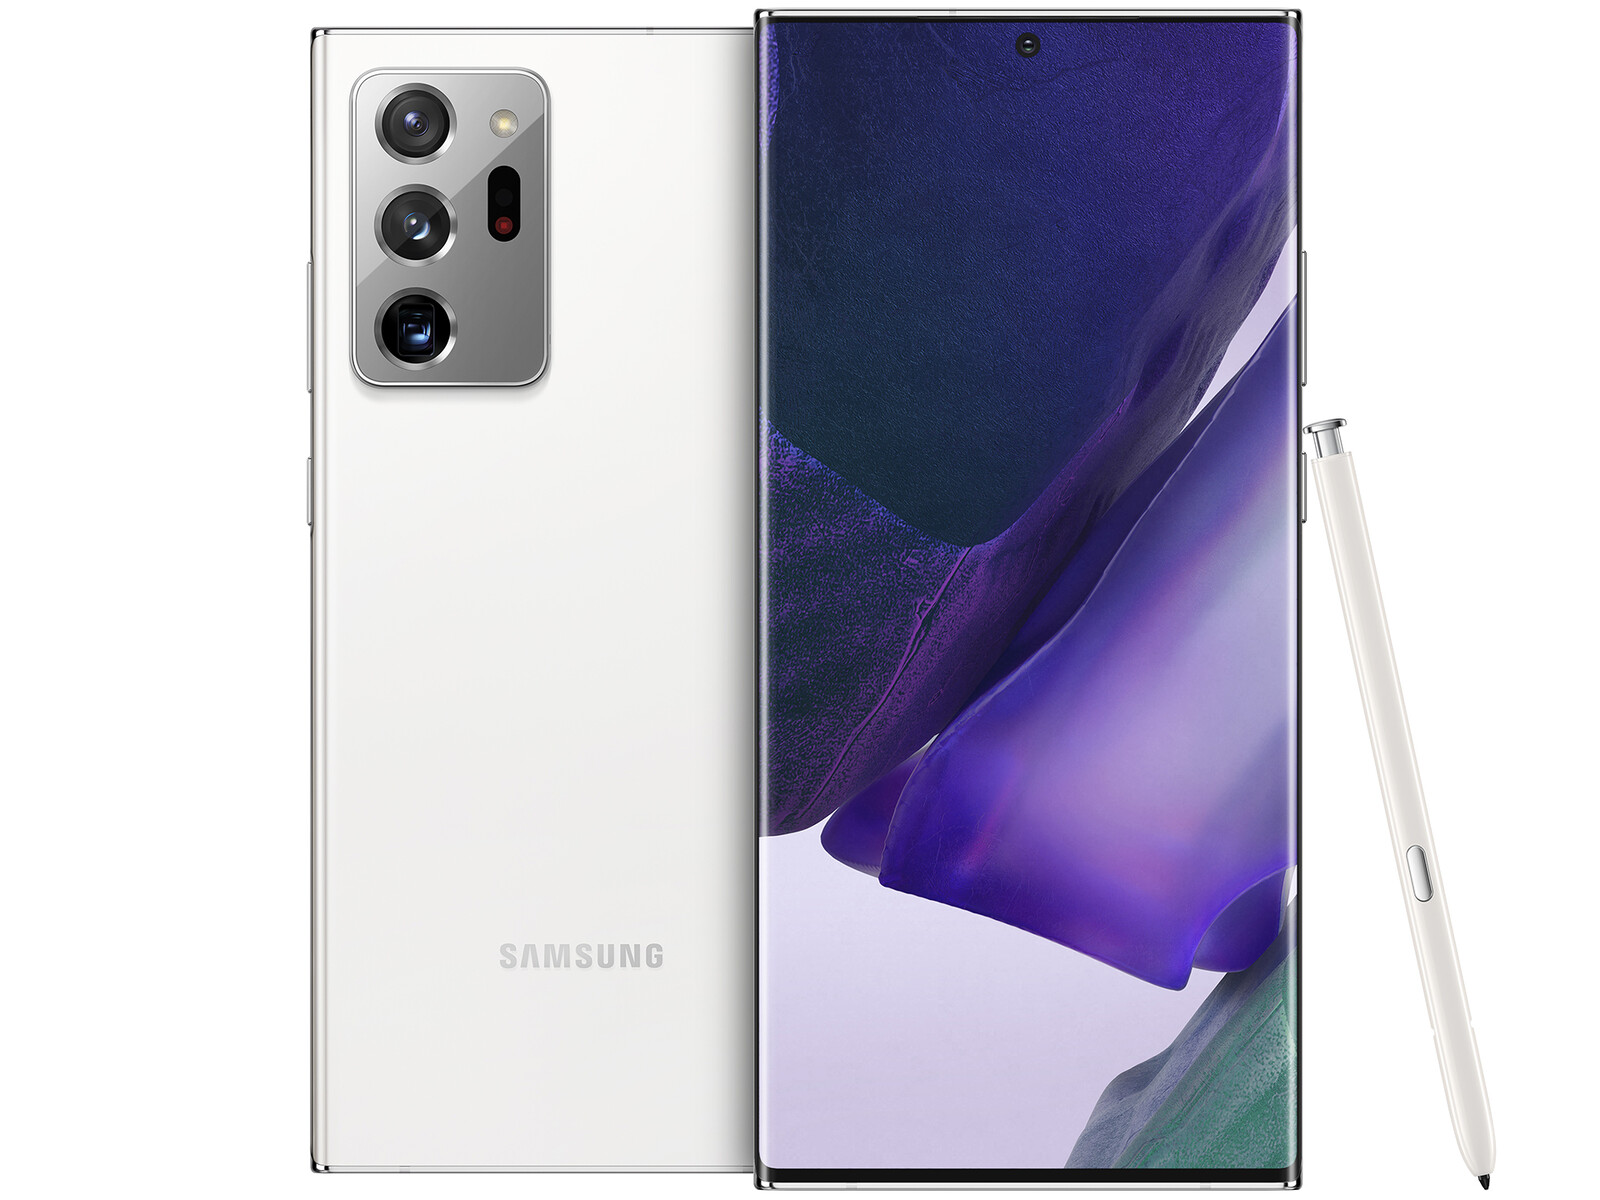 Đánh giá ngoài trang cho Samsung Galaxy Note20 Ultra là sự thể hiện của giá trị thực sự của sản phẩm này. Nó không chỉ bao gồm các tính năng tuyệt vời, mà còn có những hình nền tuyệt đẹp và đáng kinh ngạc để tăng thêm vẻ đẹp cho thiết bị của bạn.